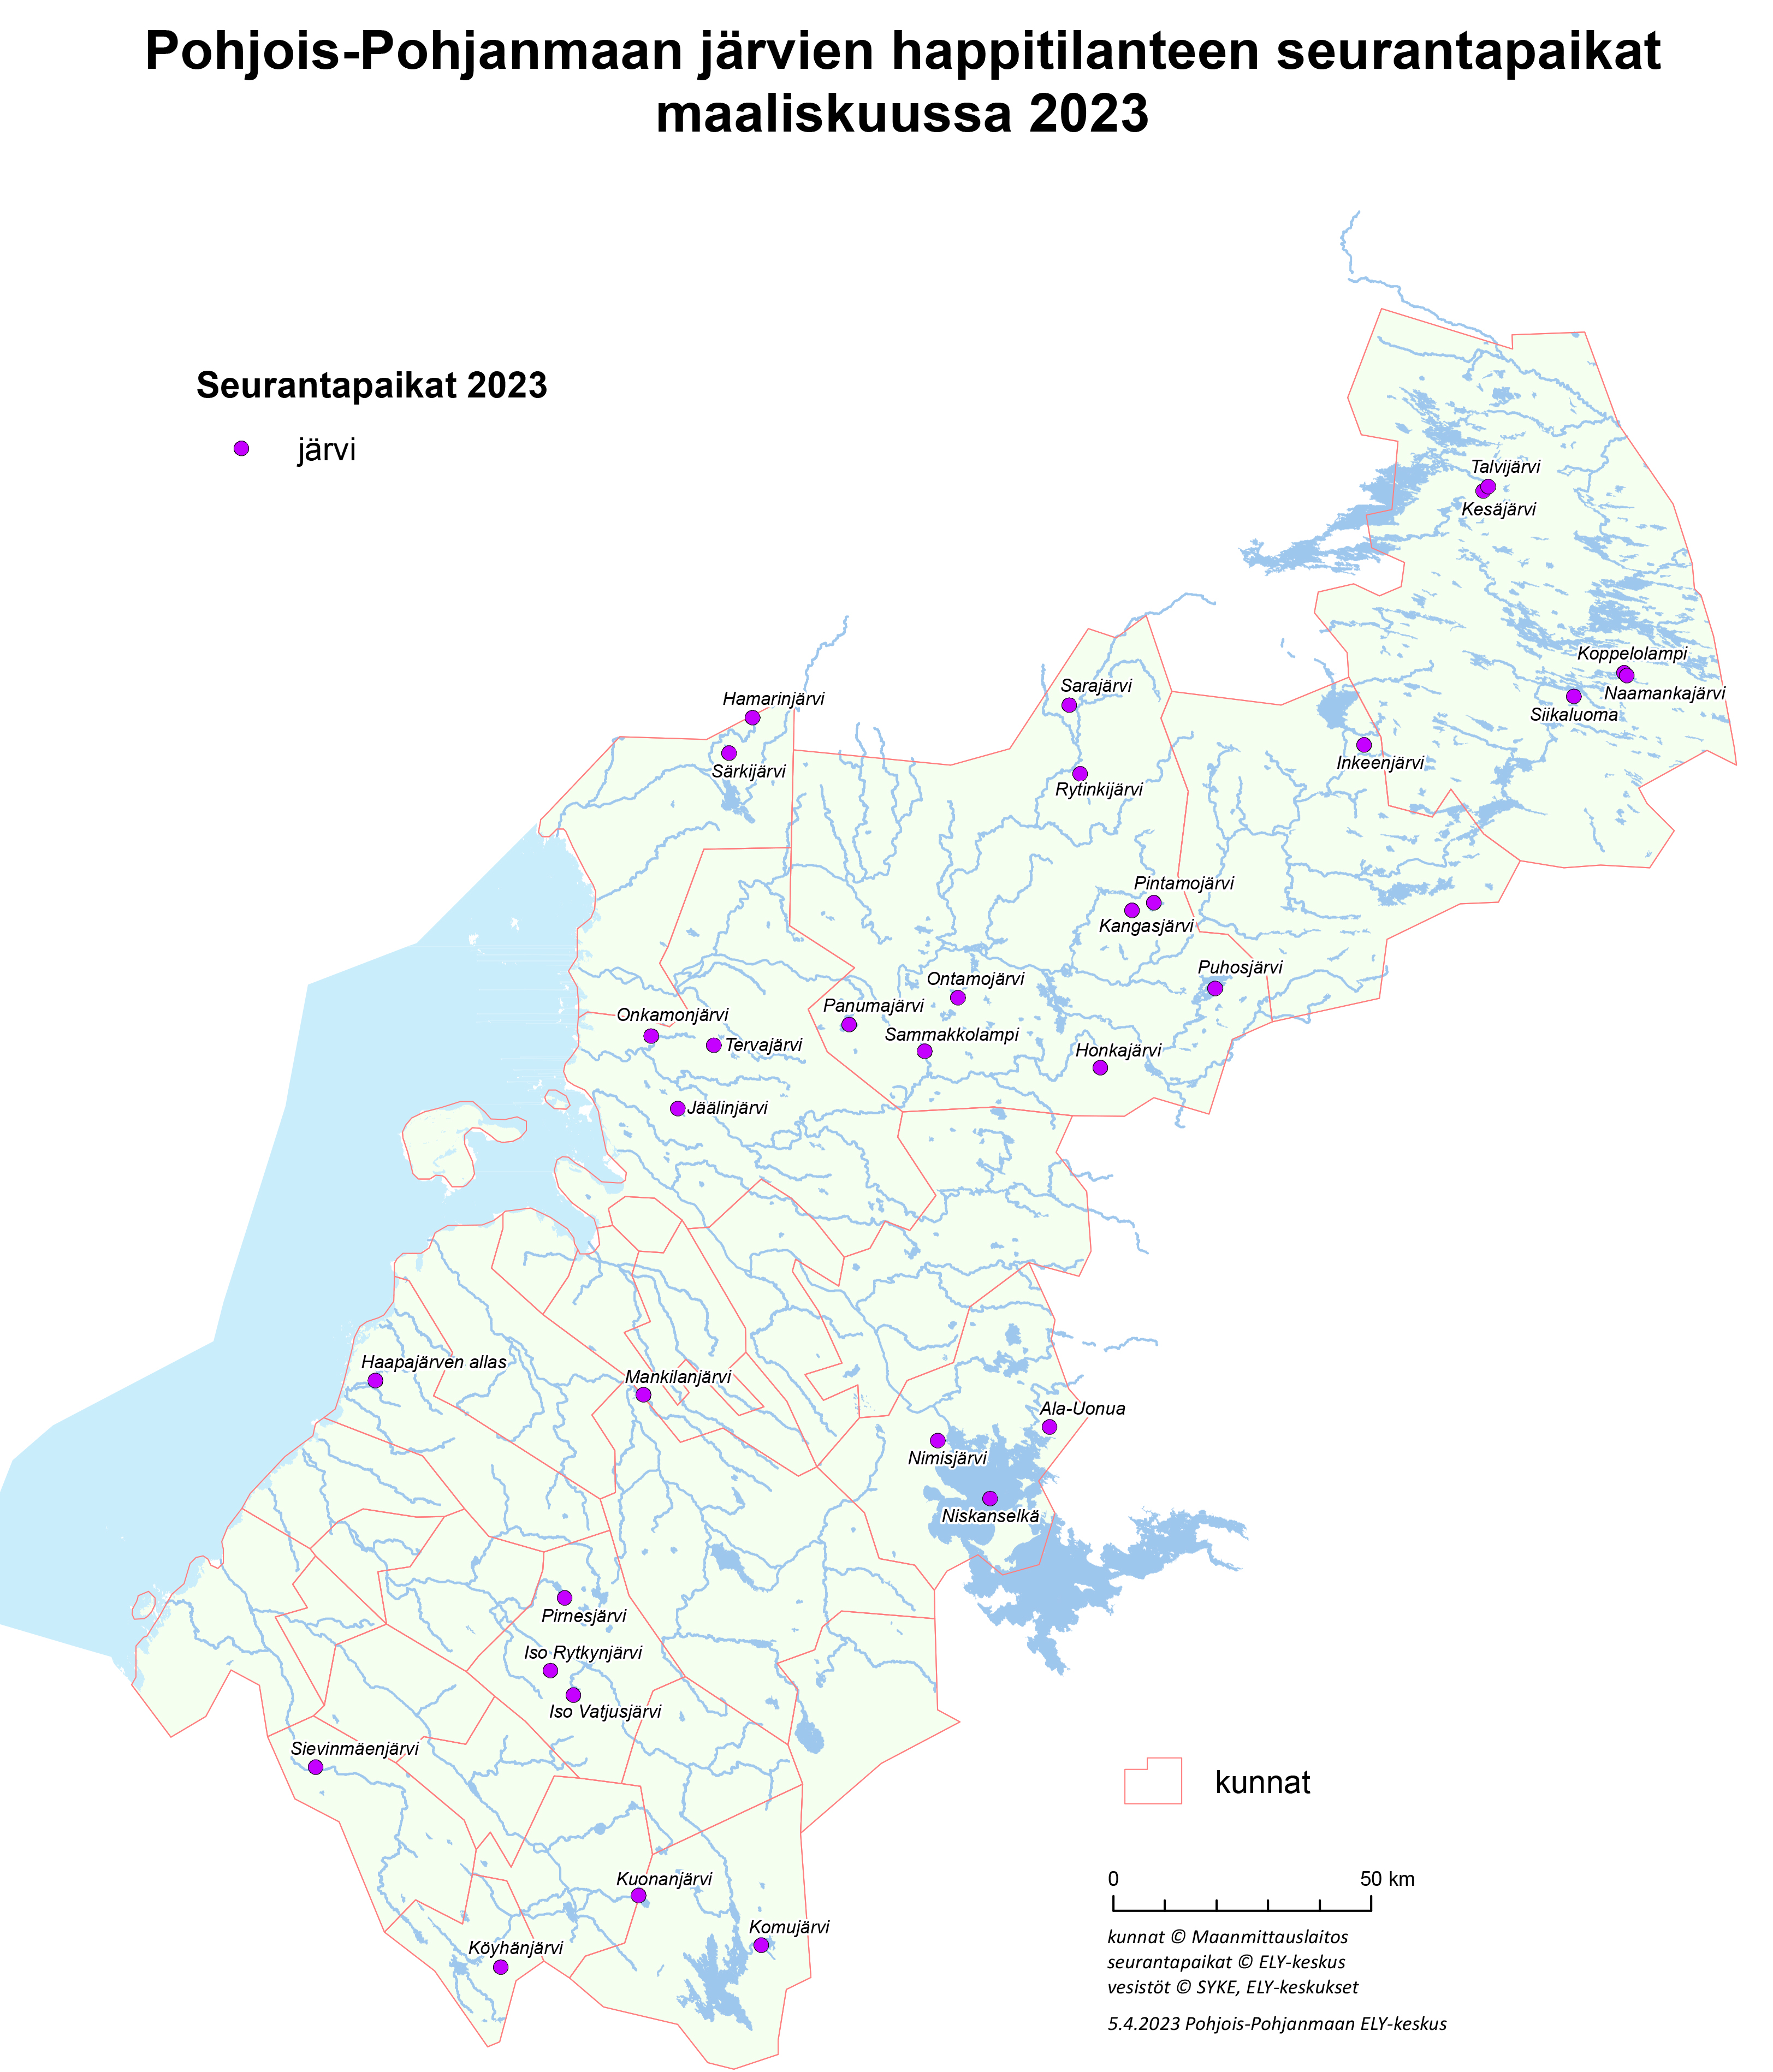 Pohjois-Pohjanmaan järvien happitilanne heikoin pienissä ja matalissa  järvissä | Pohjois-Pohjanmaan ELY-keskus